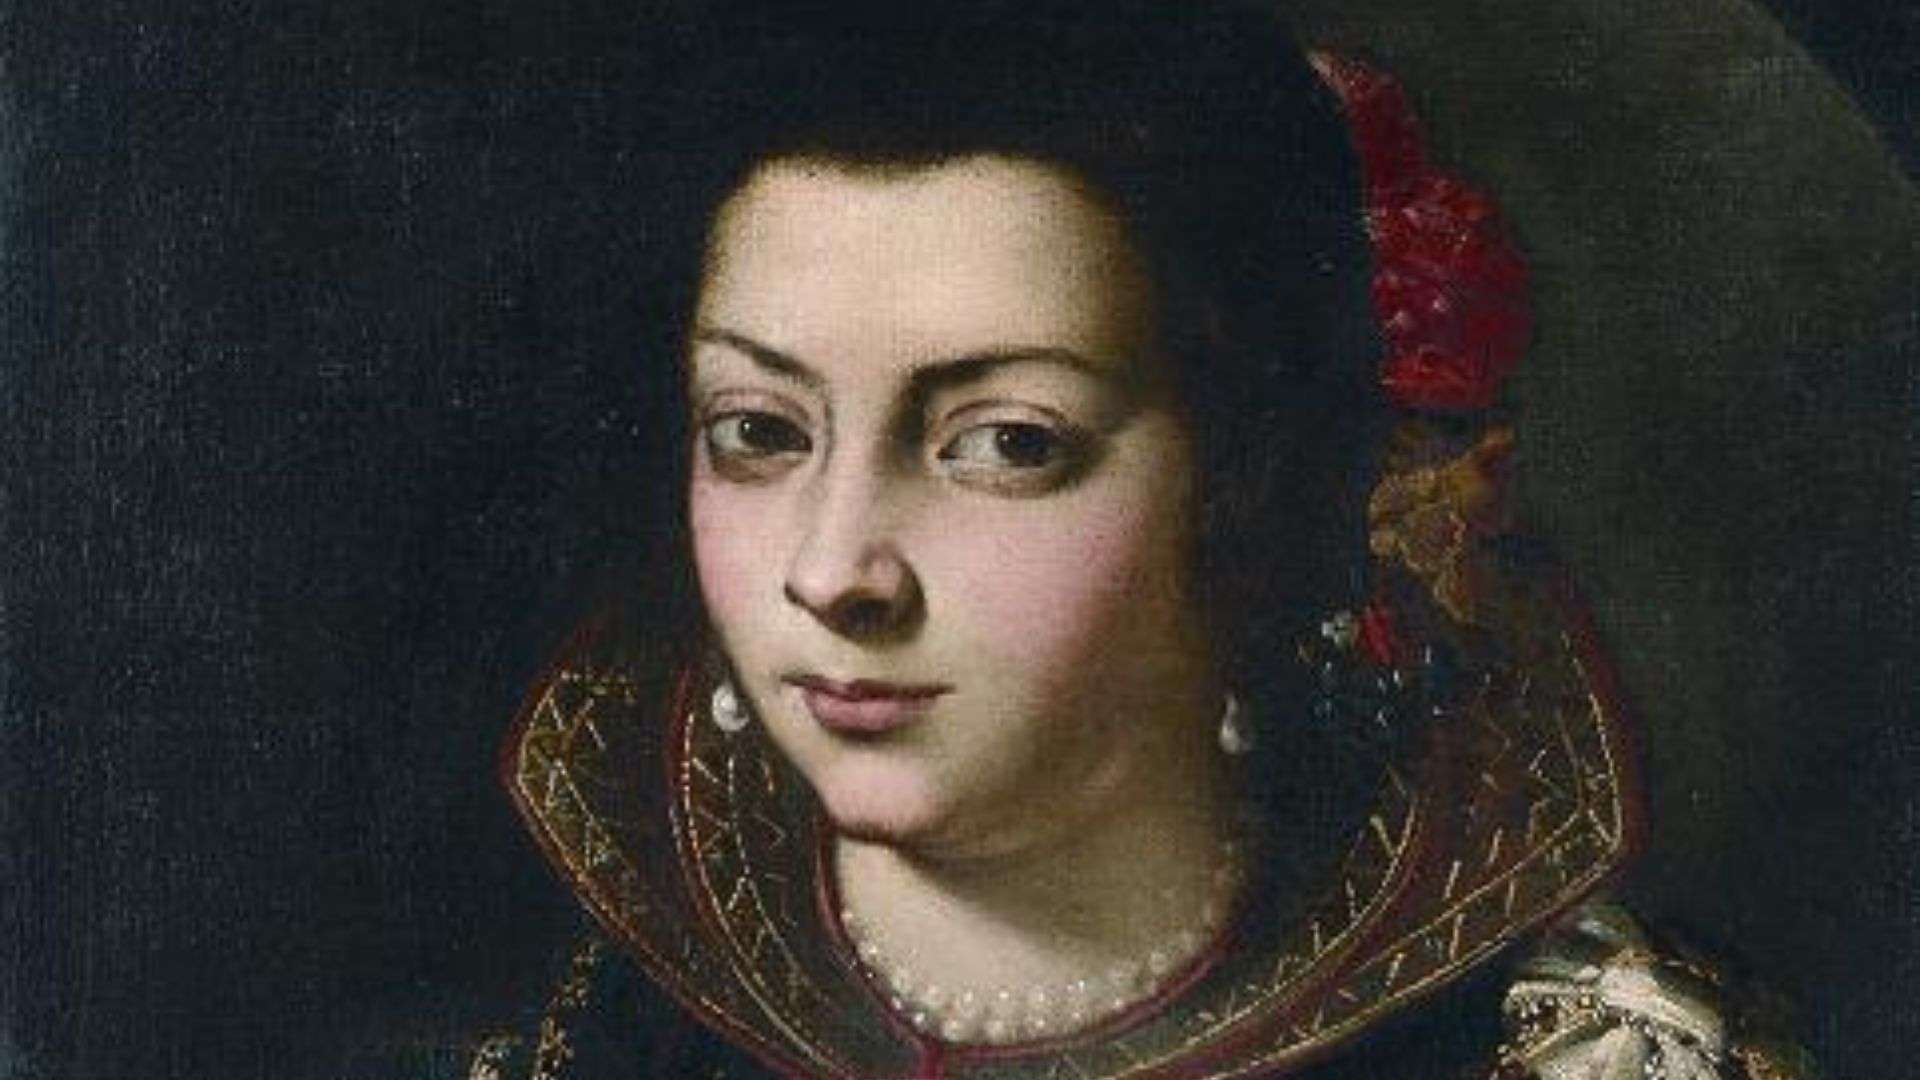 Retrato de la gran heroína coruñesa María Pita. Cuadro de autor desconocido.